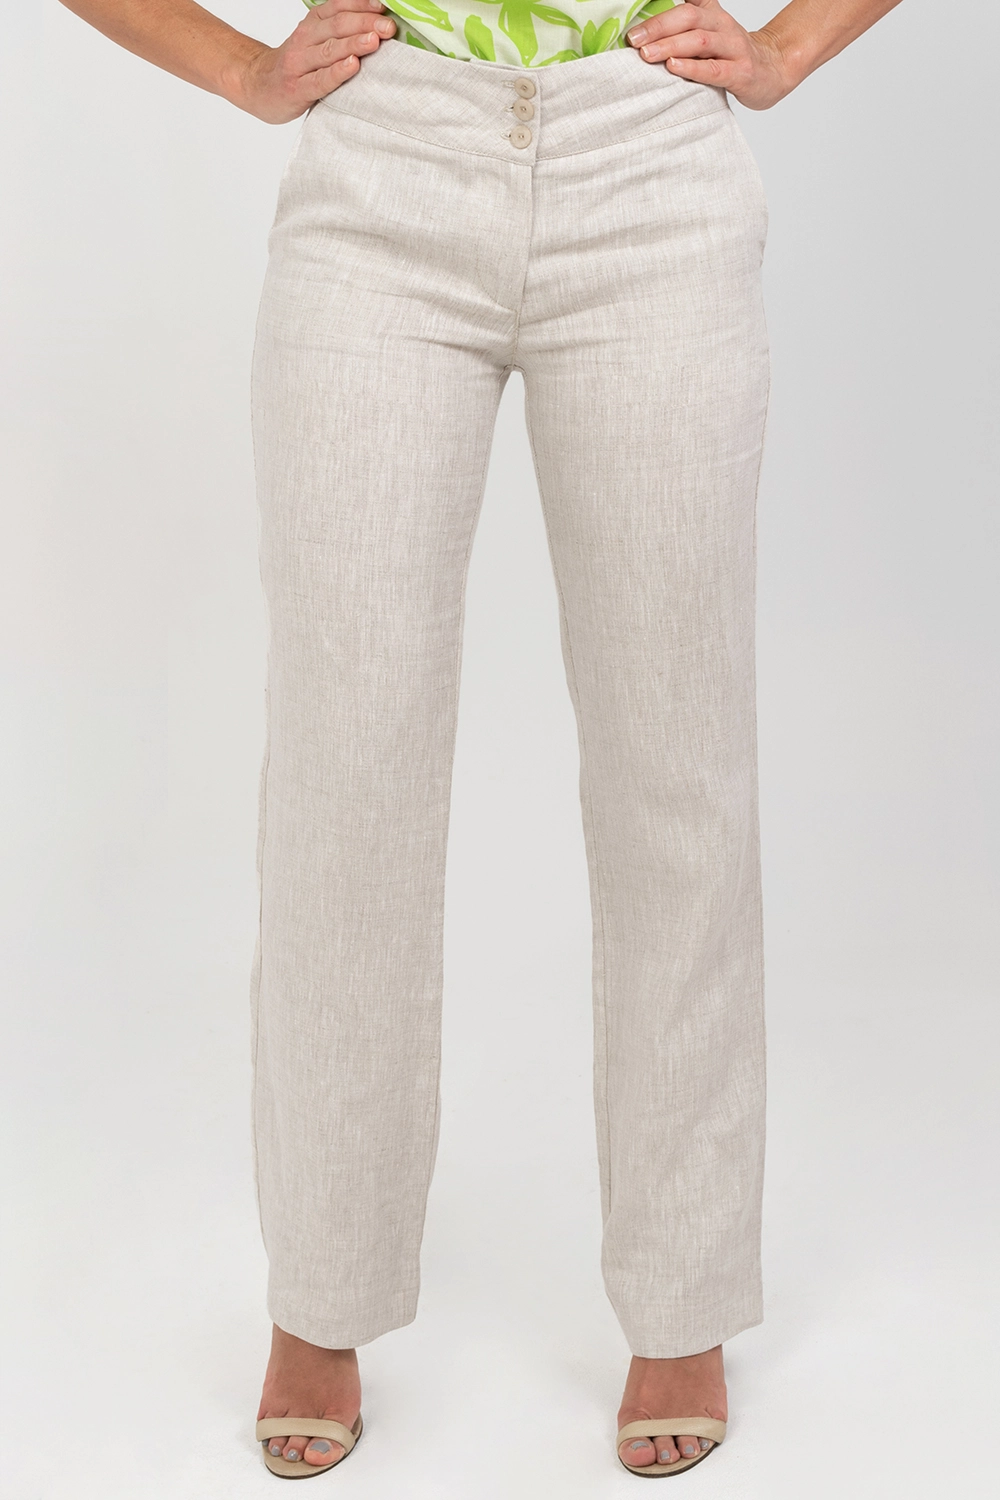 Pantalón básico slim en lino tiro medio. Natural talla 12